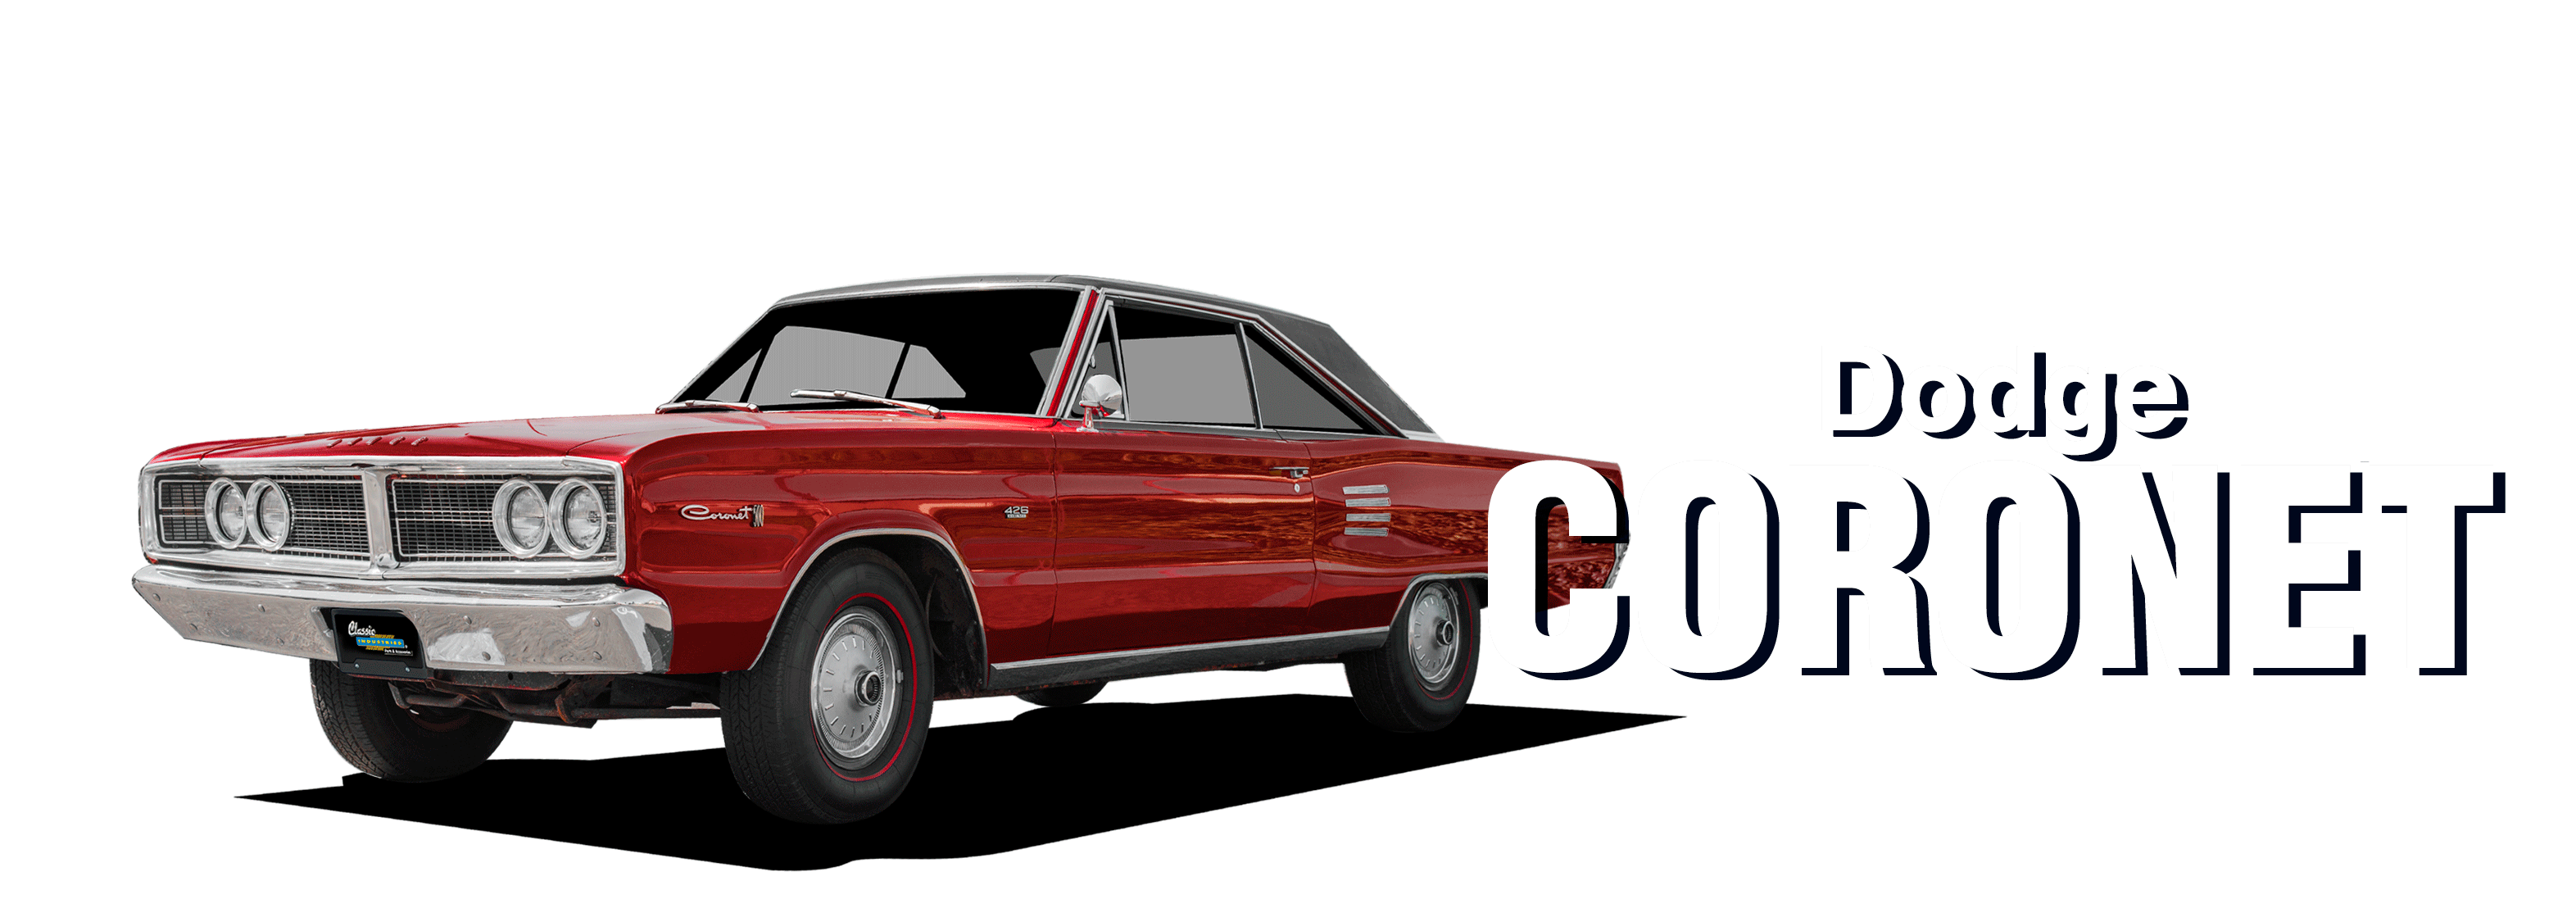 Dodge-coronet-vehicle-desktop-2023-1